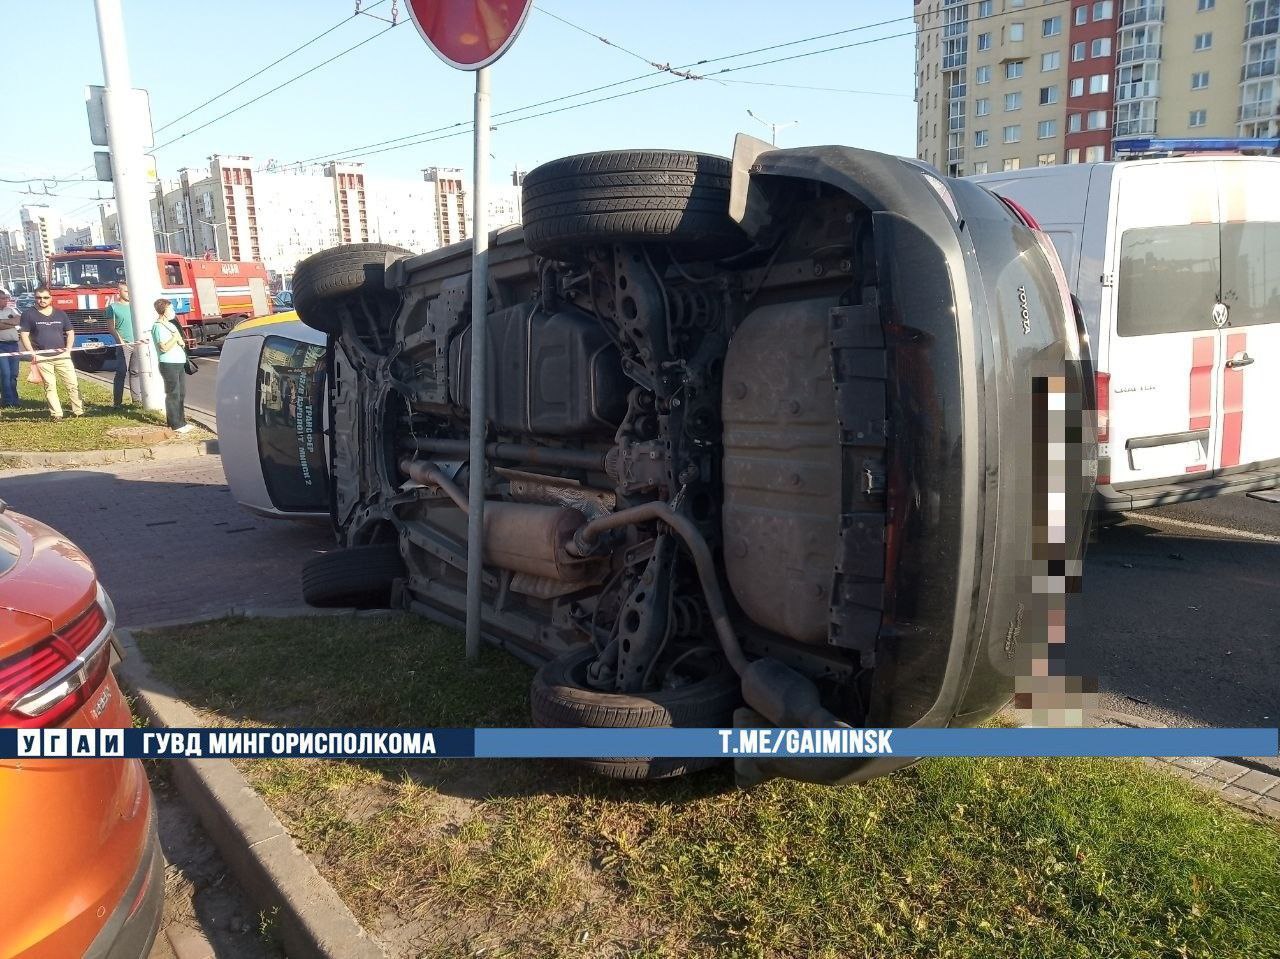 Два автомобиля перевернулись в ДТП на Притыцкого в Минске